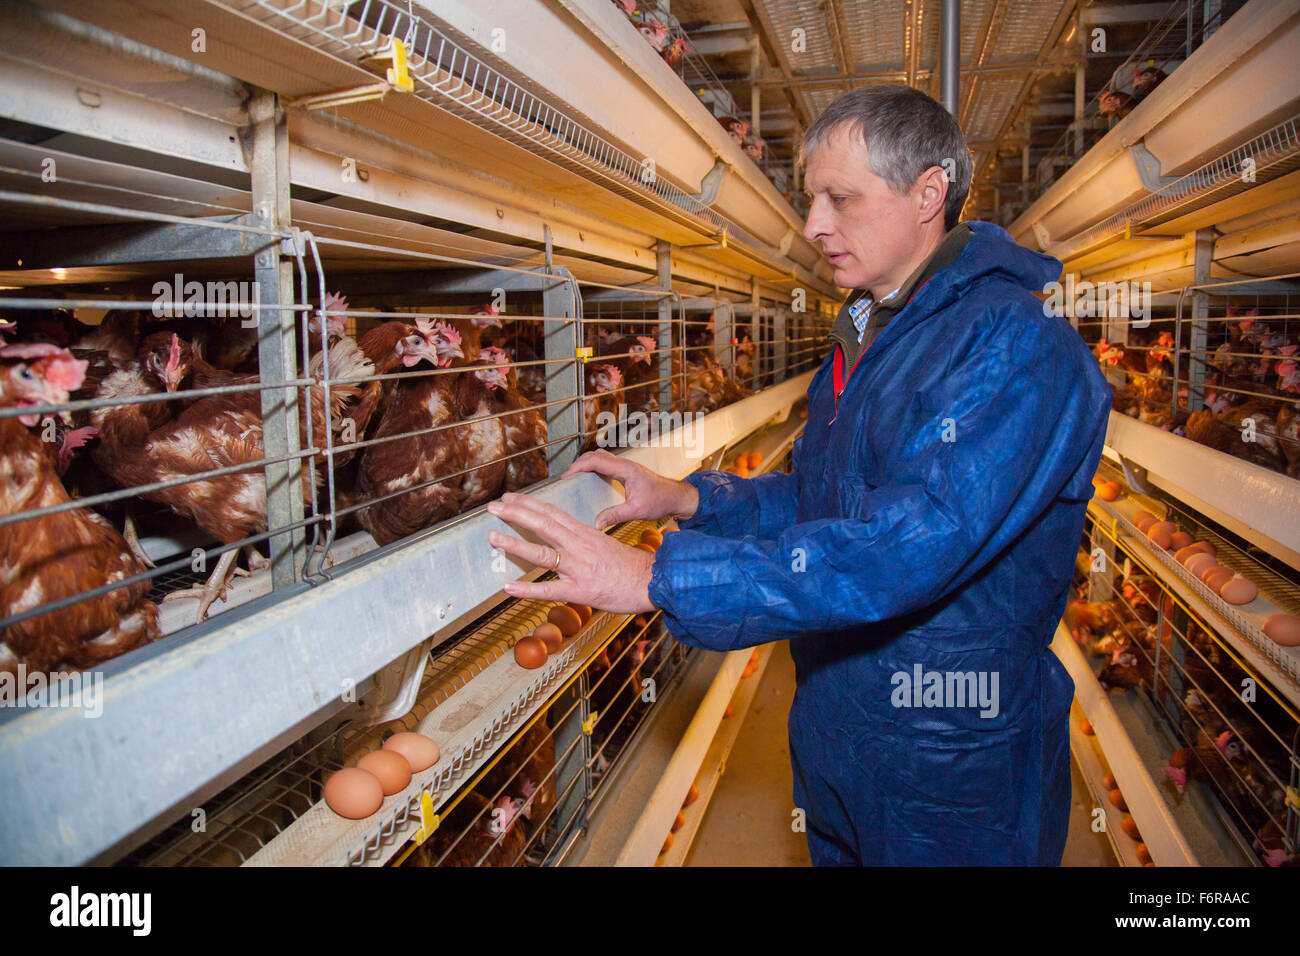 Duncan Priestner, chicken farmer. Stock Photo